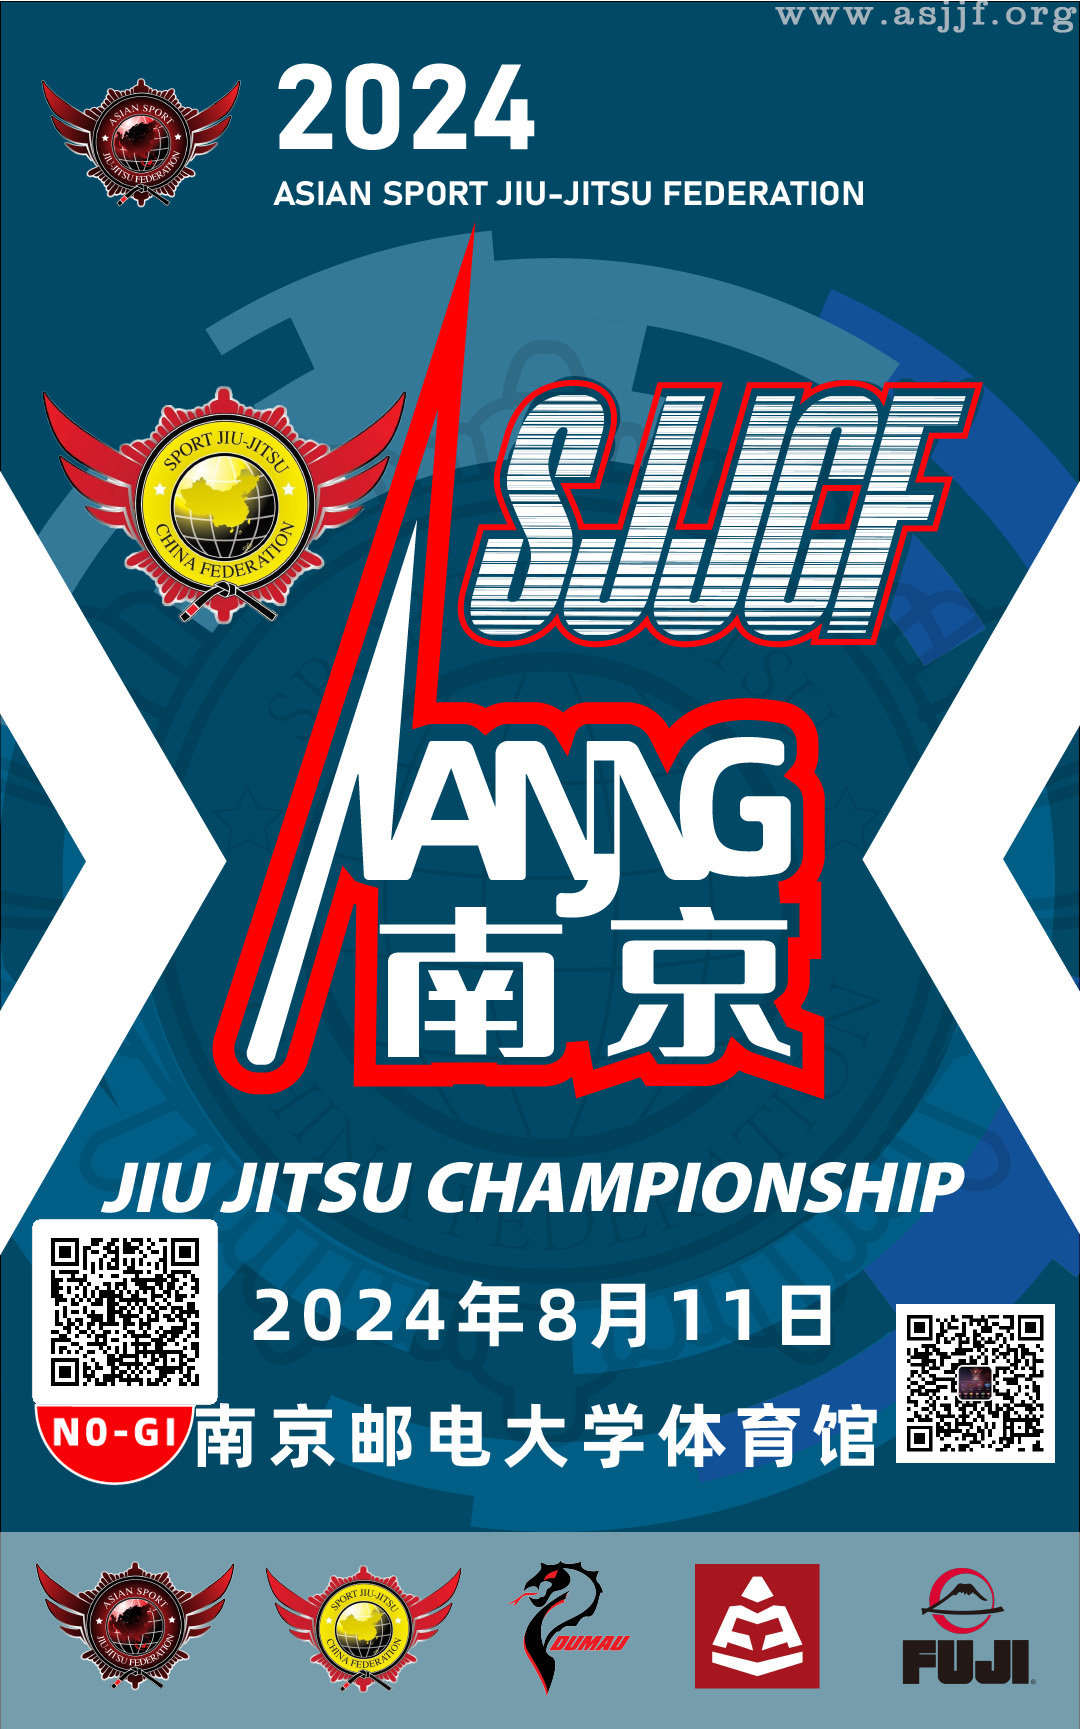 sjjcf nanjing no-gi jiu jitsu championship 2024(no-gi event)